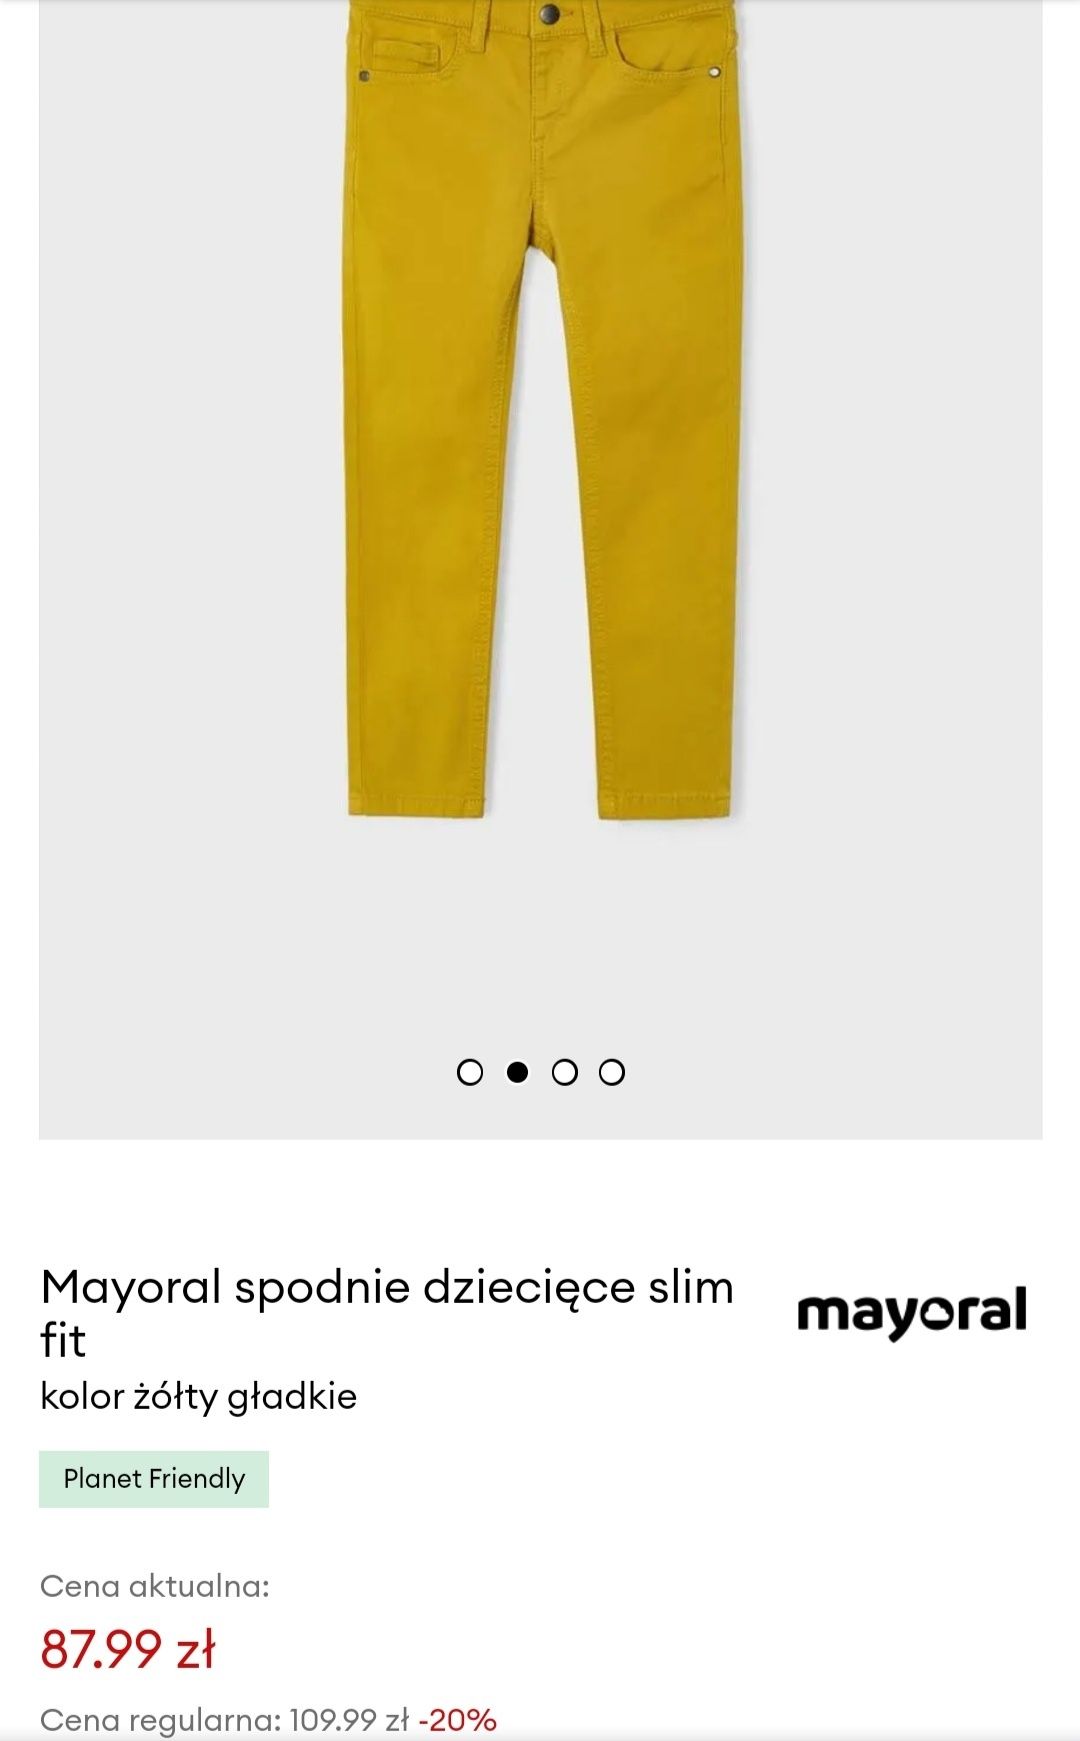 Spodnie mayoral żółte 116